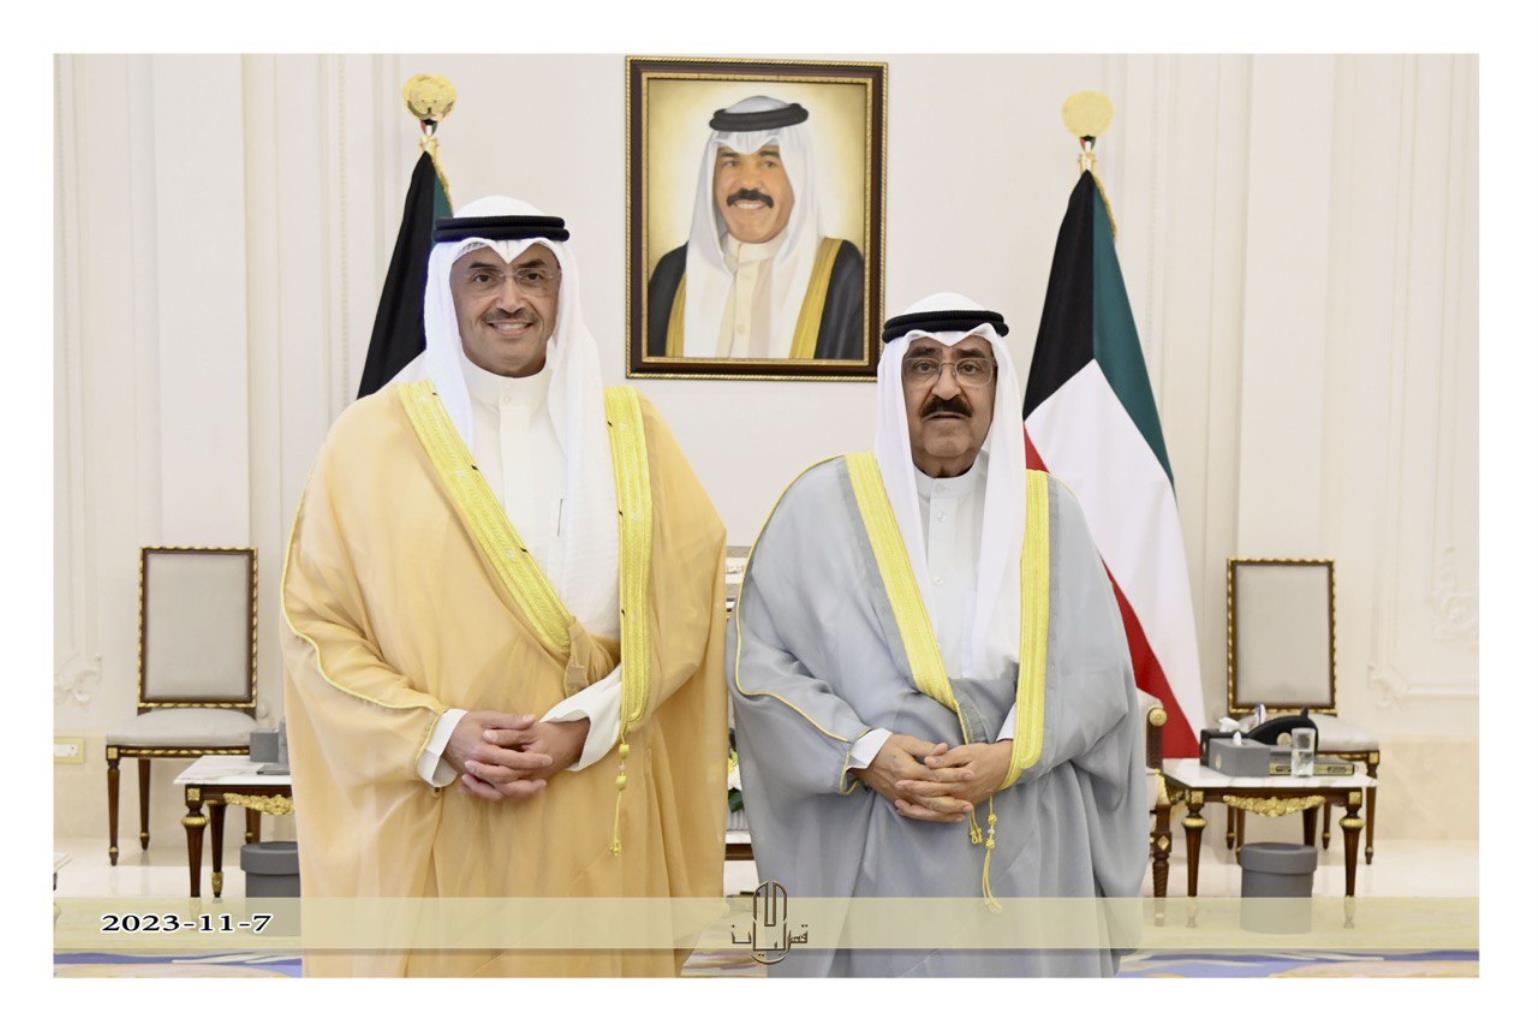 رئيس مجلس الشورى القطري يولم على شرف رؤساء البرلمانات الخليجية بحضور السعدون